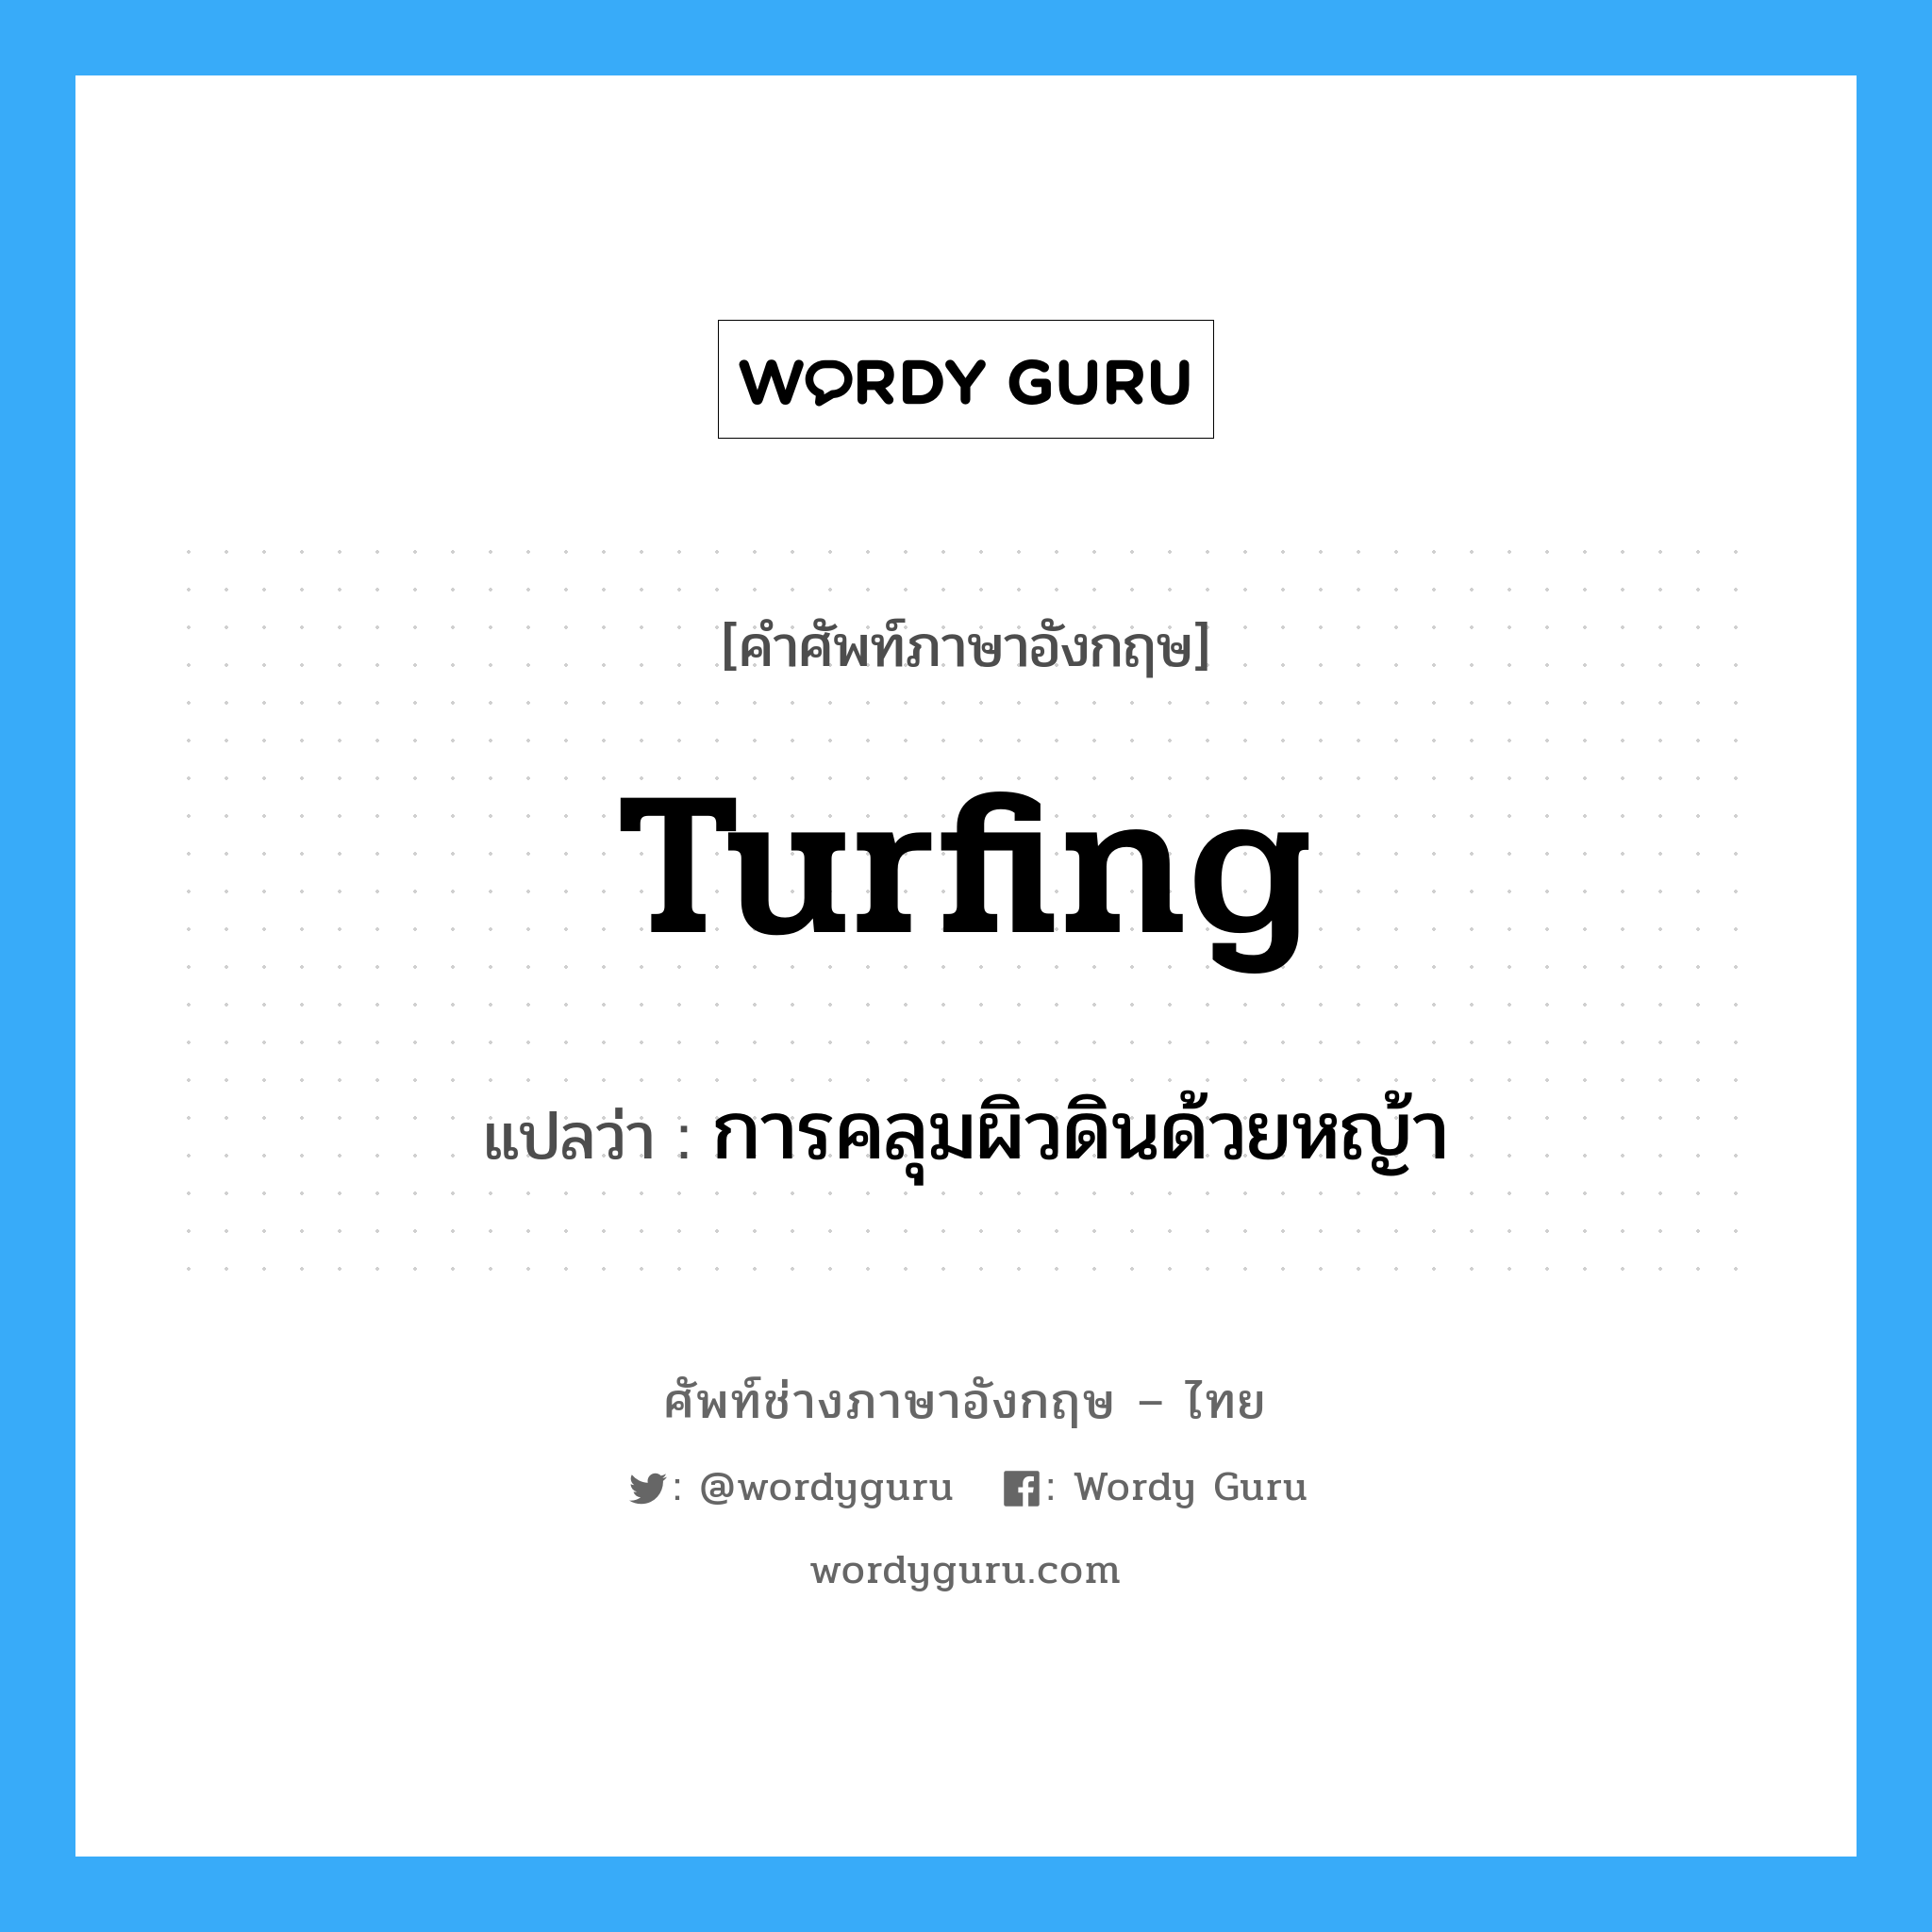 turfing แปลว่า?, คำศัพท์ช่างภาษาอังกฤษ - ไทย turfing คำศัพท์ภาษาอังกฤษ turfing แปลว่า การคลุมผิวดินด้วยหญ้า